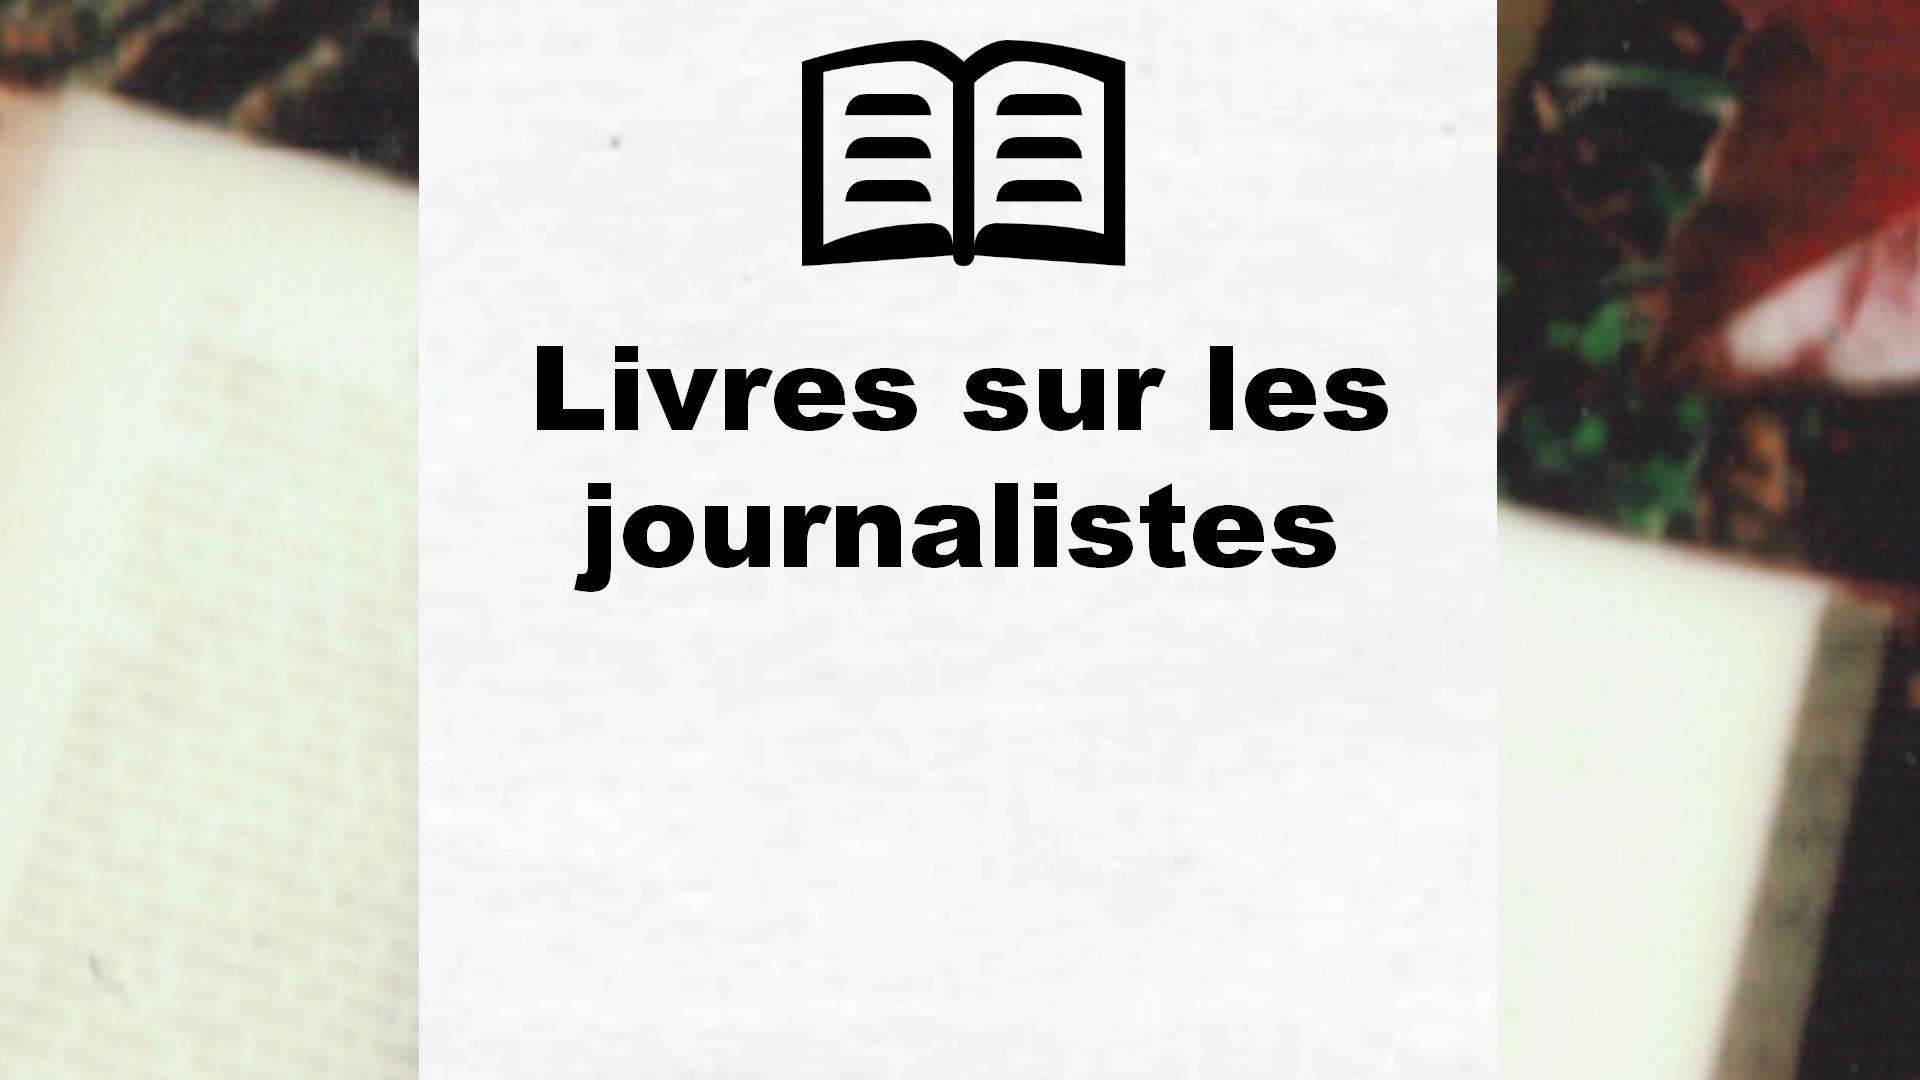 Livres sur les journalistes